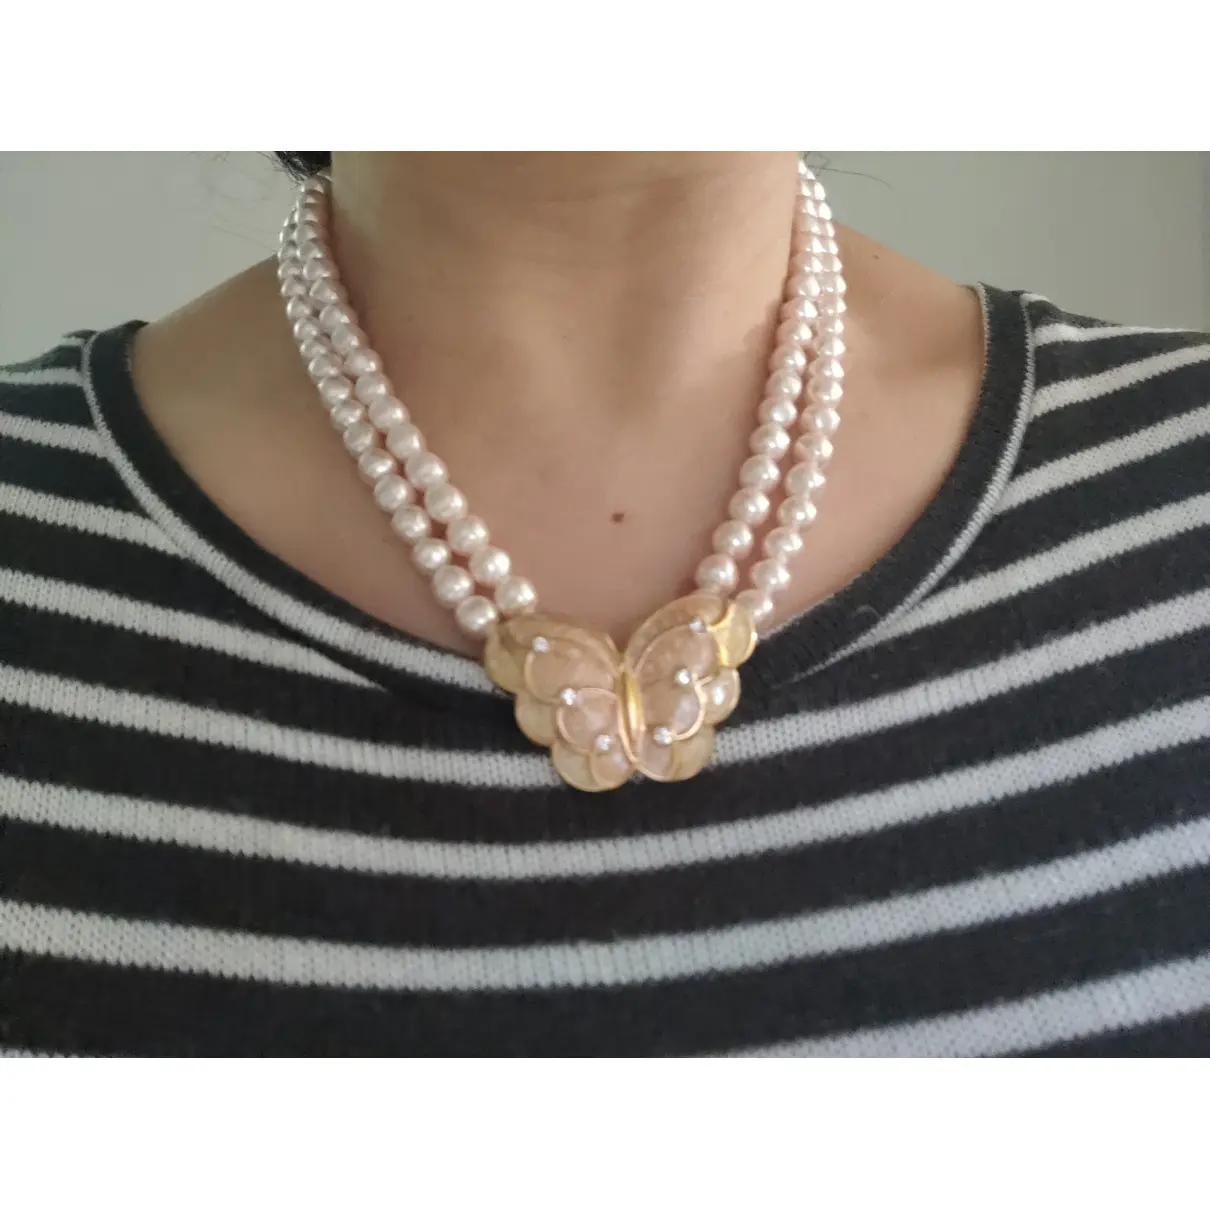 Pearls jewellery set Kenneth Jay Lane - Vintage